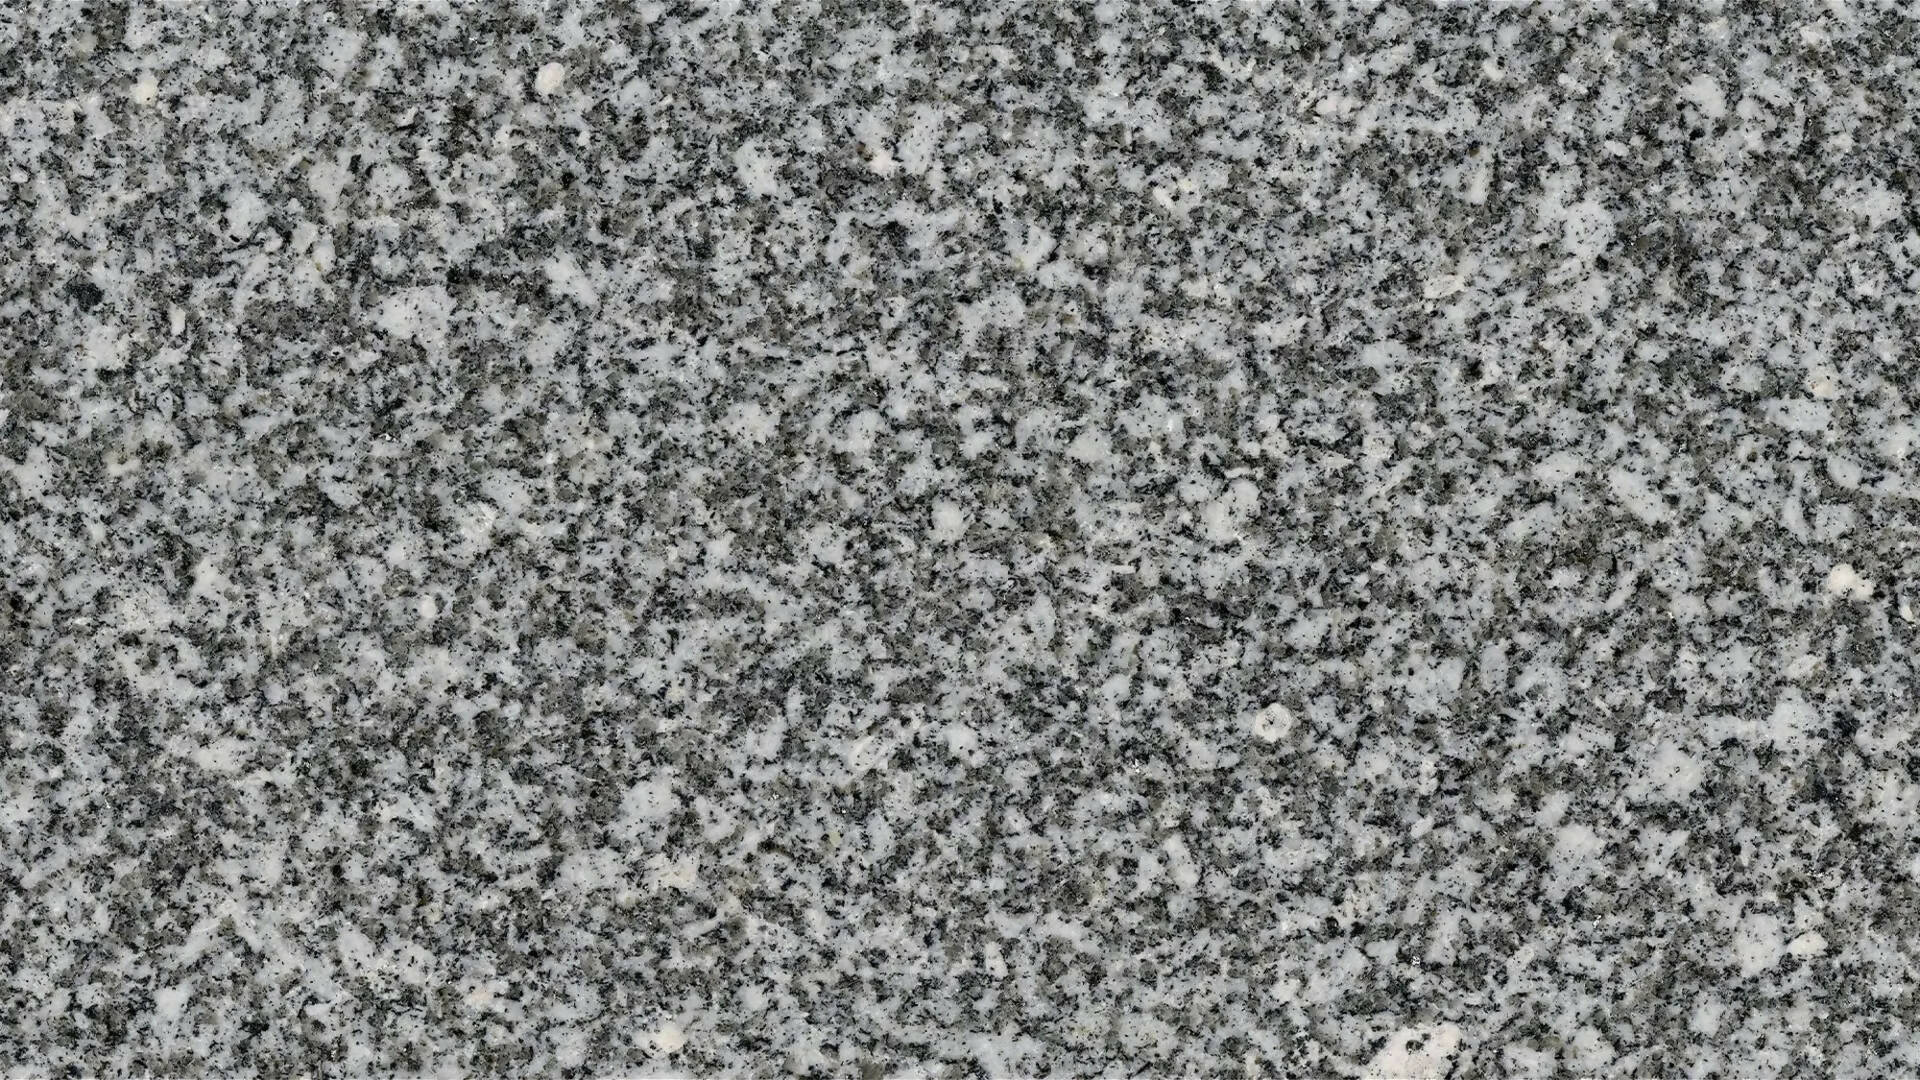 BLANC PERLE GRANITE,Granite,Brachot,www.work-tops.com